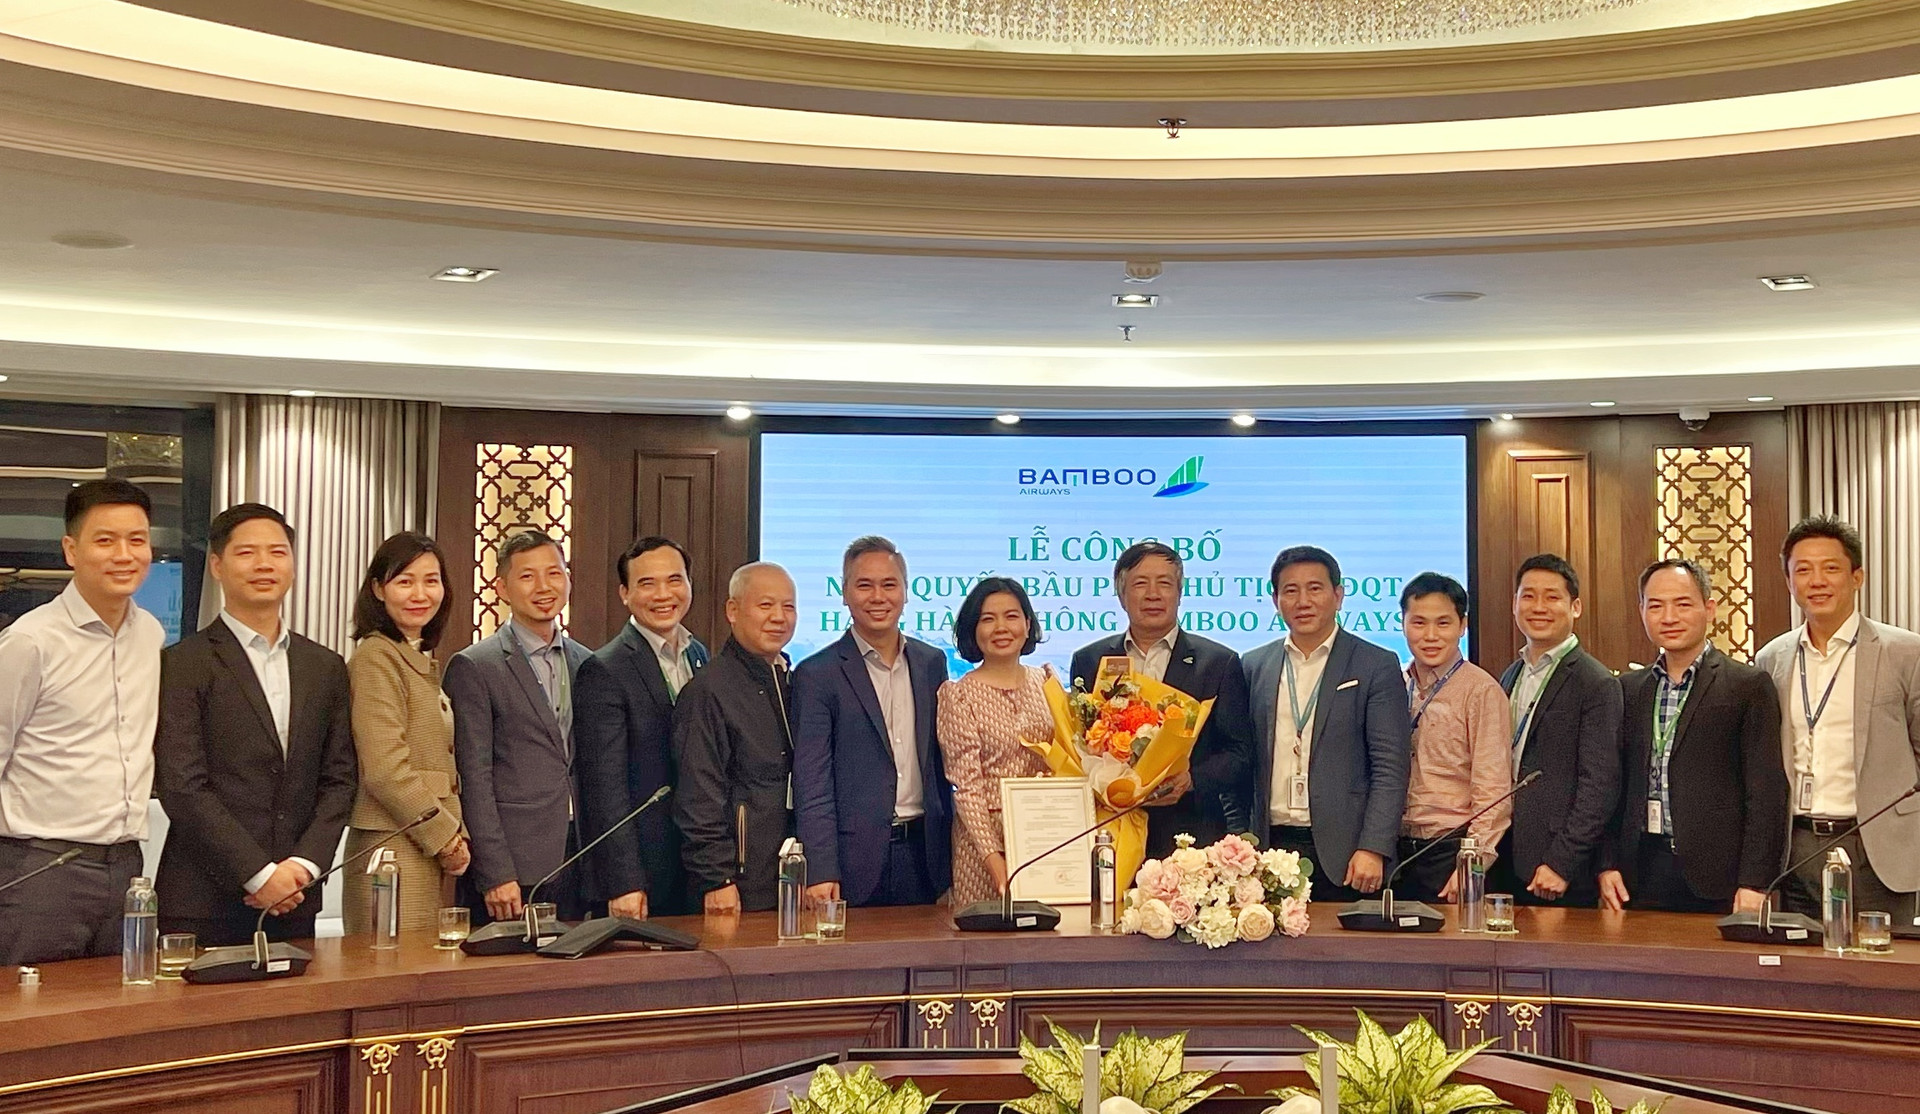 Ông Nguyễn Ngọc Trọng (đứng thứ 6 từ phải qua) được bổ nhiệm giữ chức vụ Phó chủ tịch HĐQT hãng hàng không Bamboo Airways.